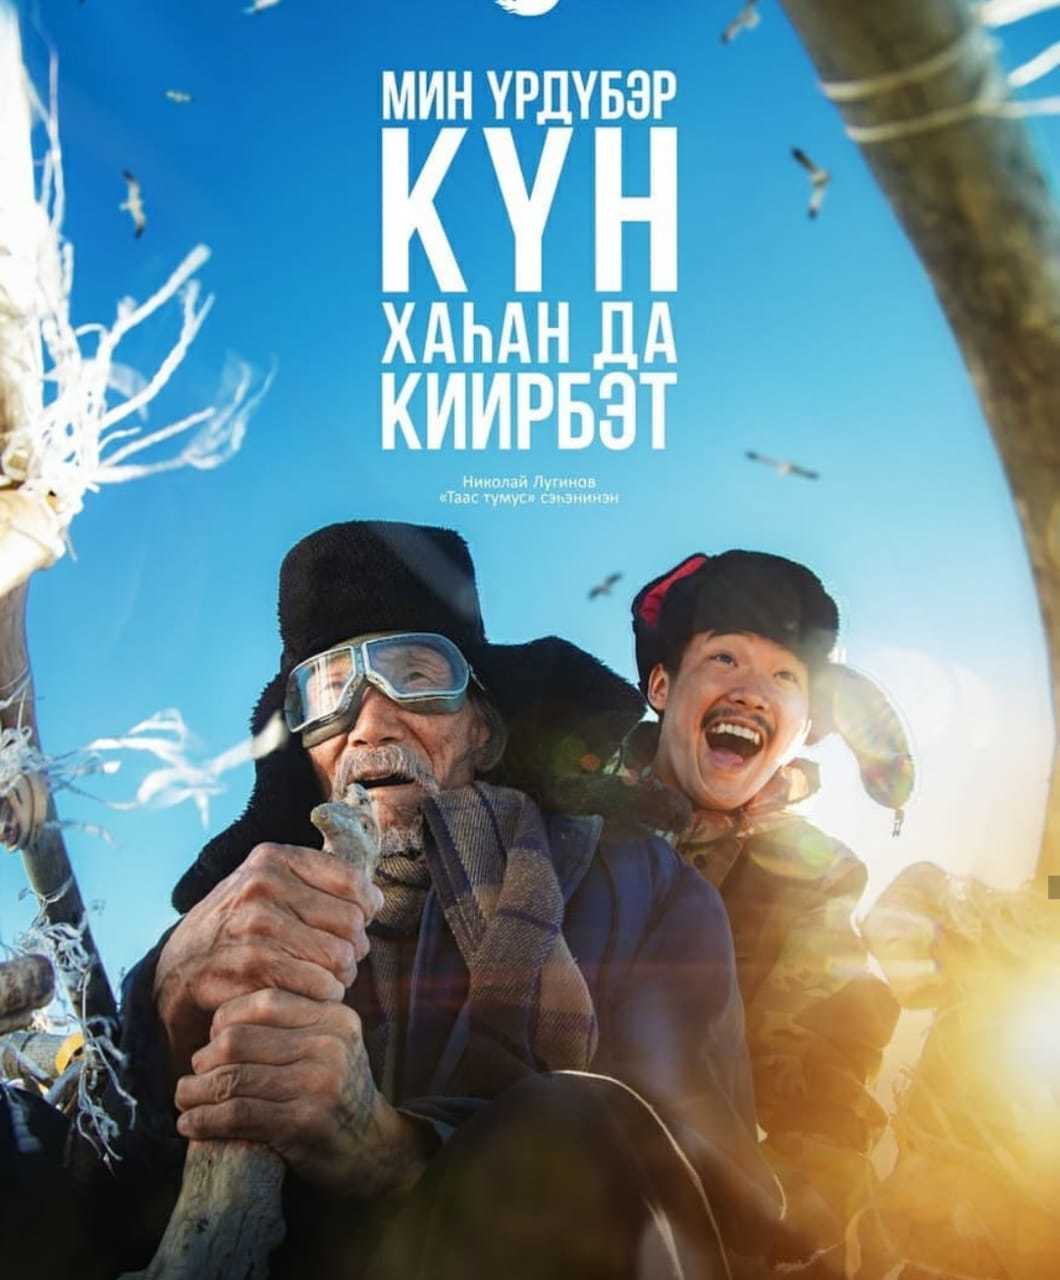 Якутский фильм номинирован на "Золотой глобус"